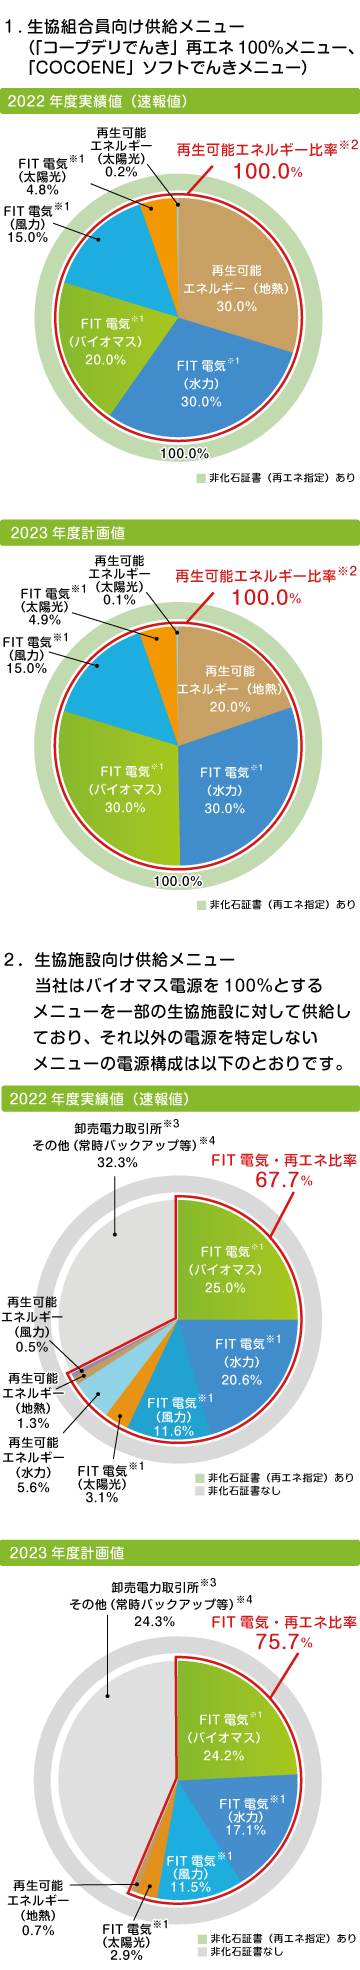 2021年度実績値（速報値） 再生可能エネルギー比率100.0%、2022年度計画値 再生可能エネルギー比率100.0％、生協施設向け供給メニュー2021年度実績値（速報値） FIT電気・再エネ比率86.4%、生協施設向け供給メニュー2022年度計画値 FIT電気・再エネ比率75.7%